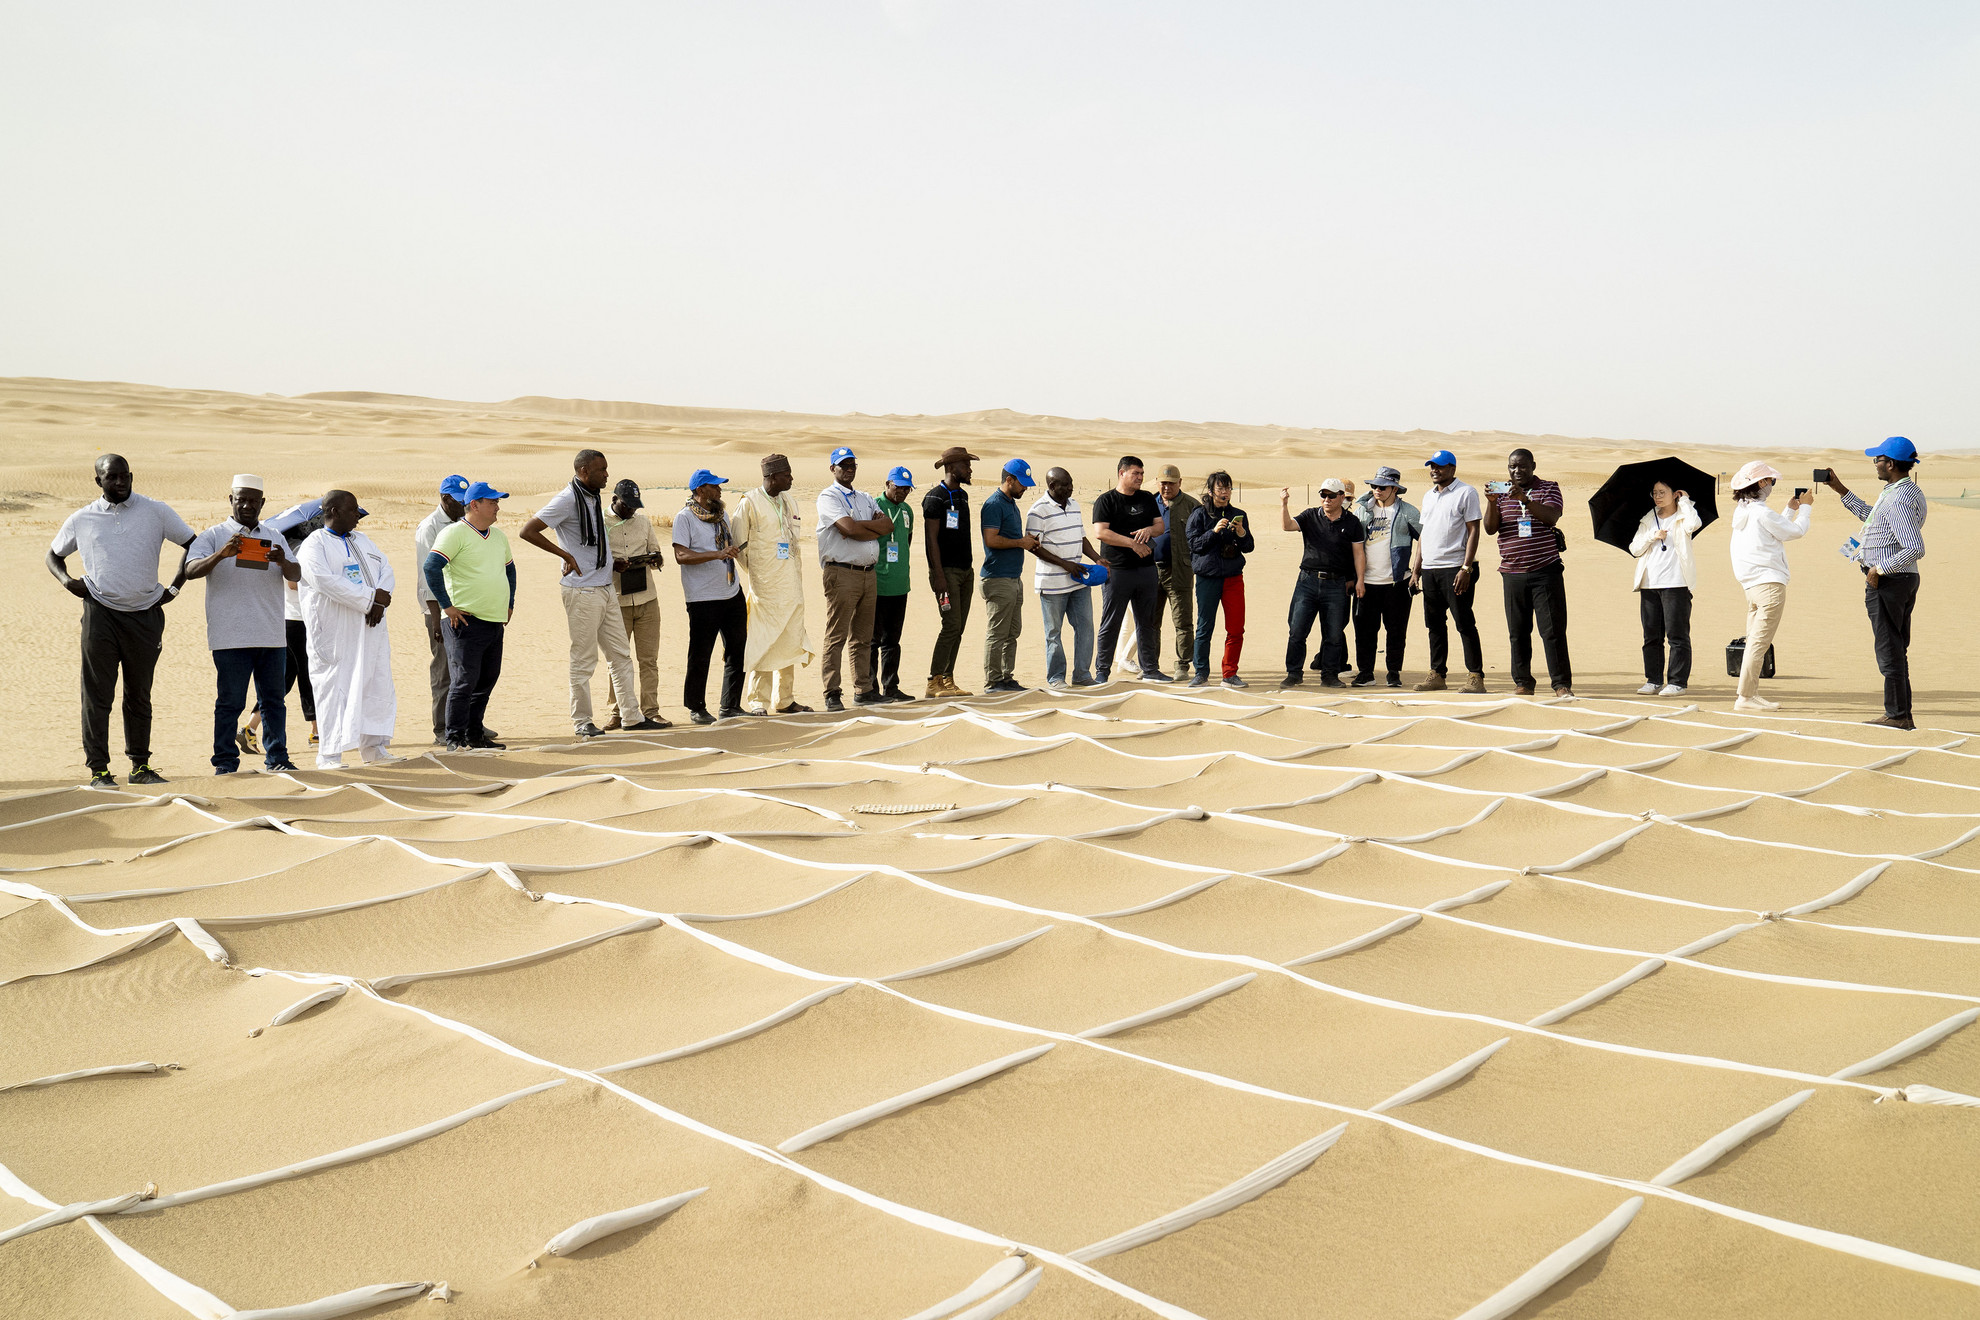 Az elsivatagosodás elleni küzdelemmel foglalkozó képzésen homokfixáló technológiákkal ismerkednek egy homokvihar megelőzési bemutatóhelyen a Taklimakan sivatagban, Kína északnyugati részén, 2023. június 12-én.